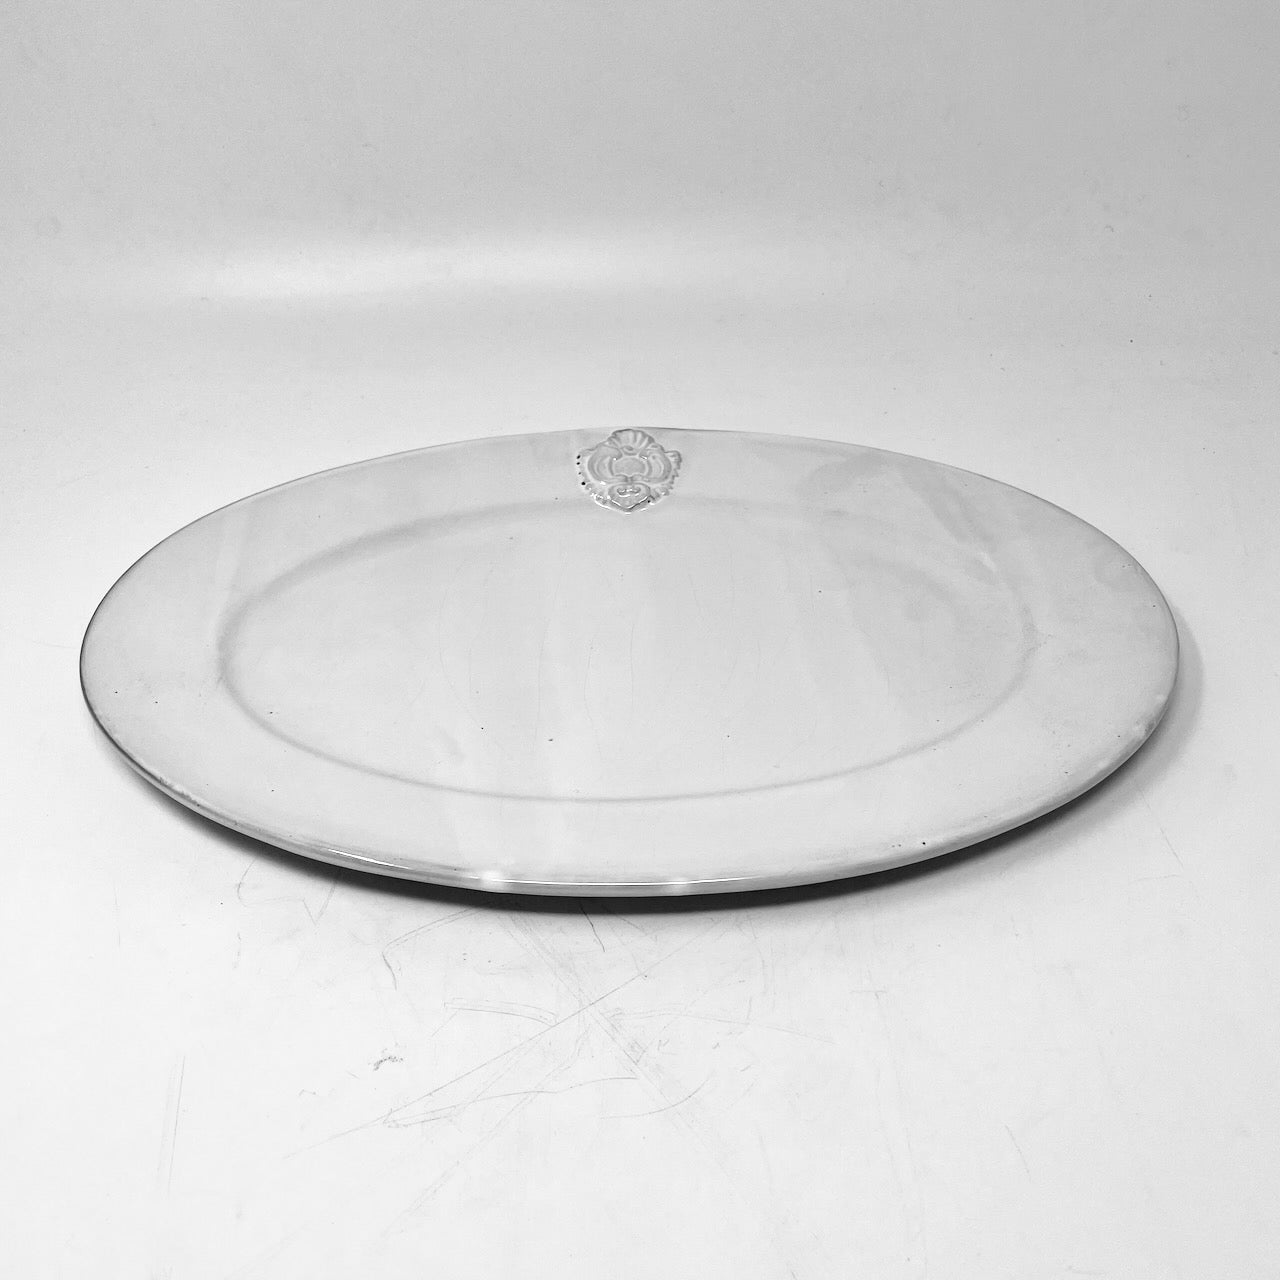 Charles oval platter